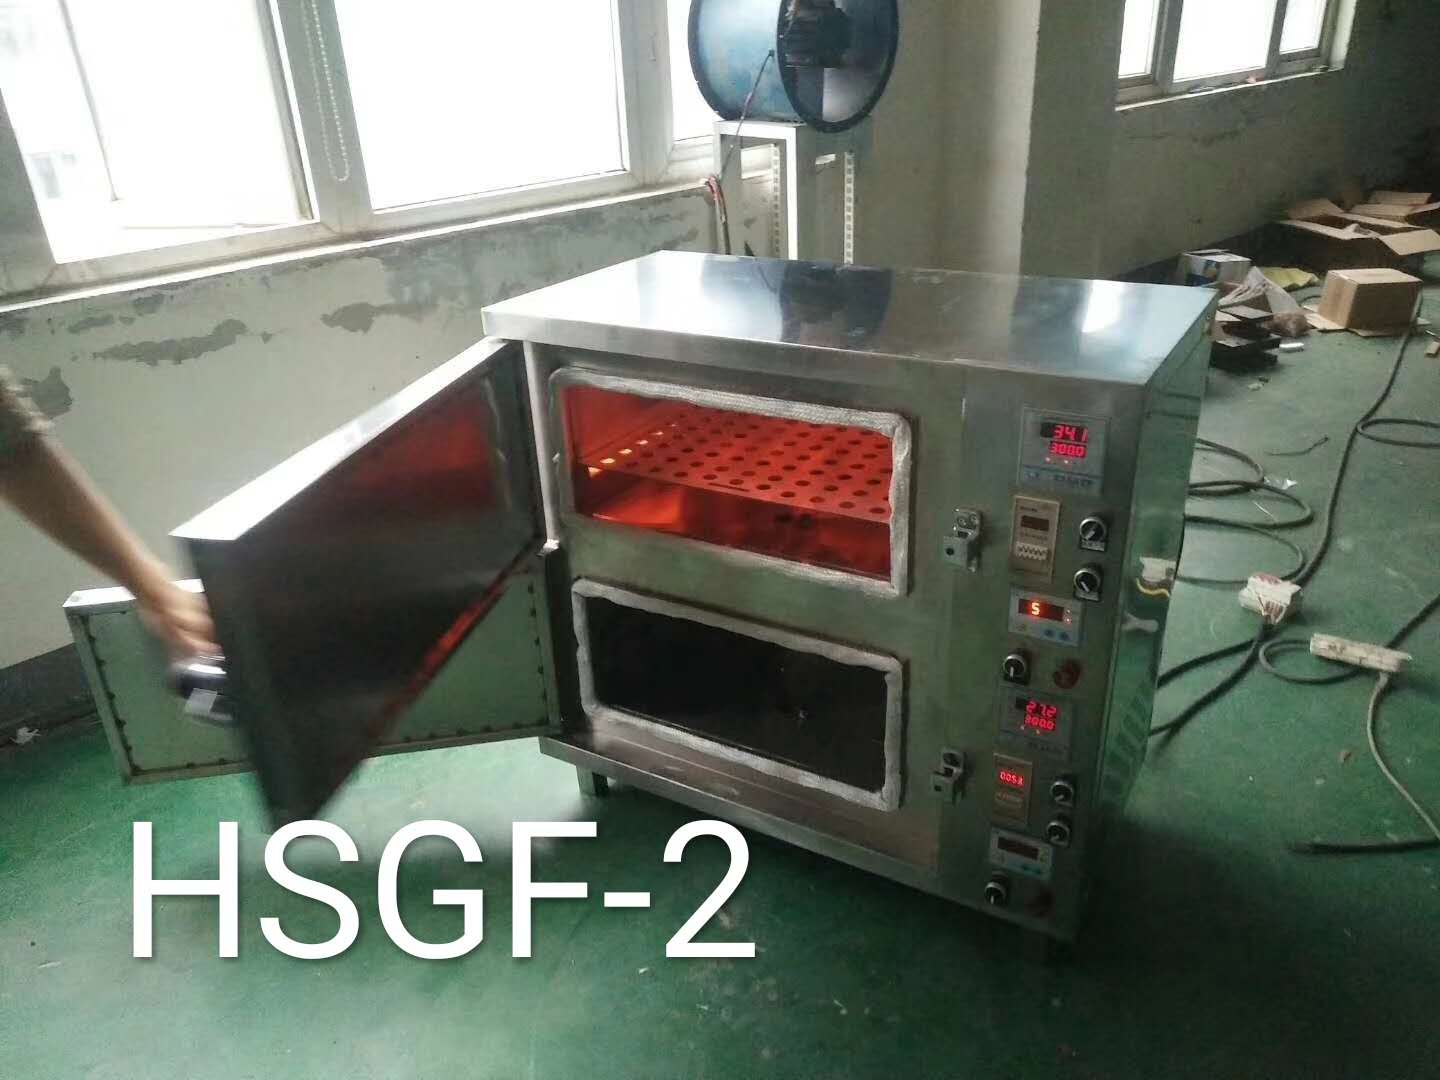 宿洲村夫烤鱼用的电烤箱,烤鱼箱厂家直销